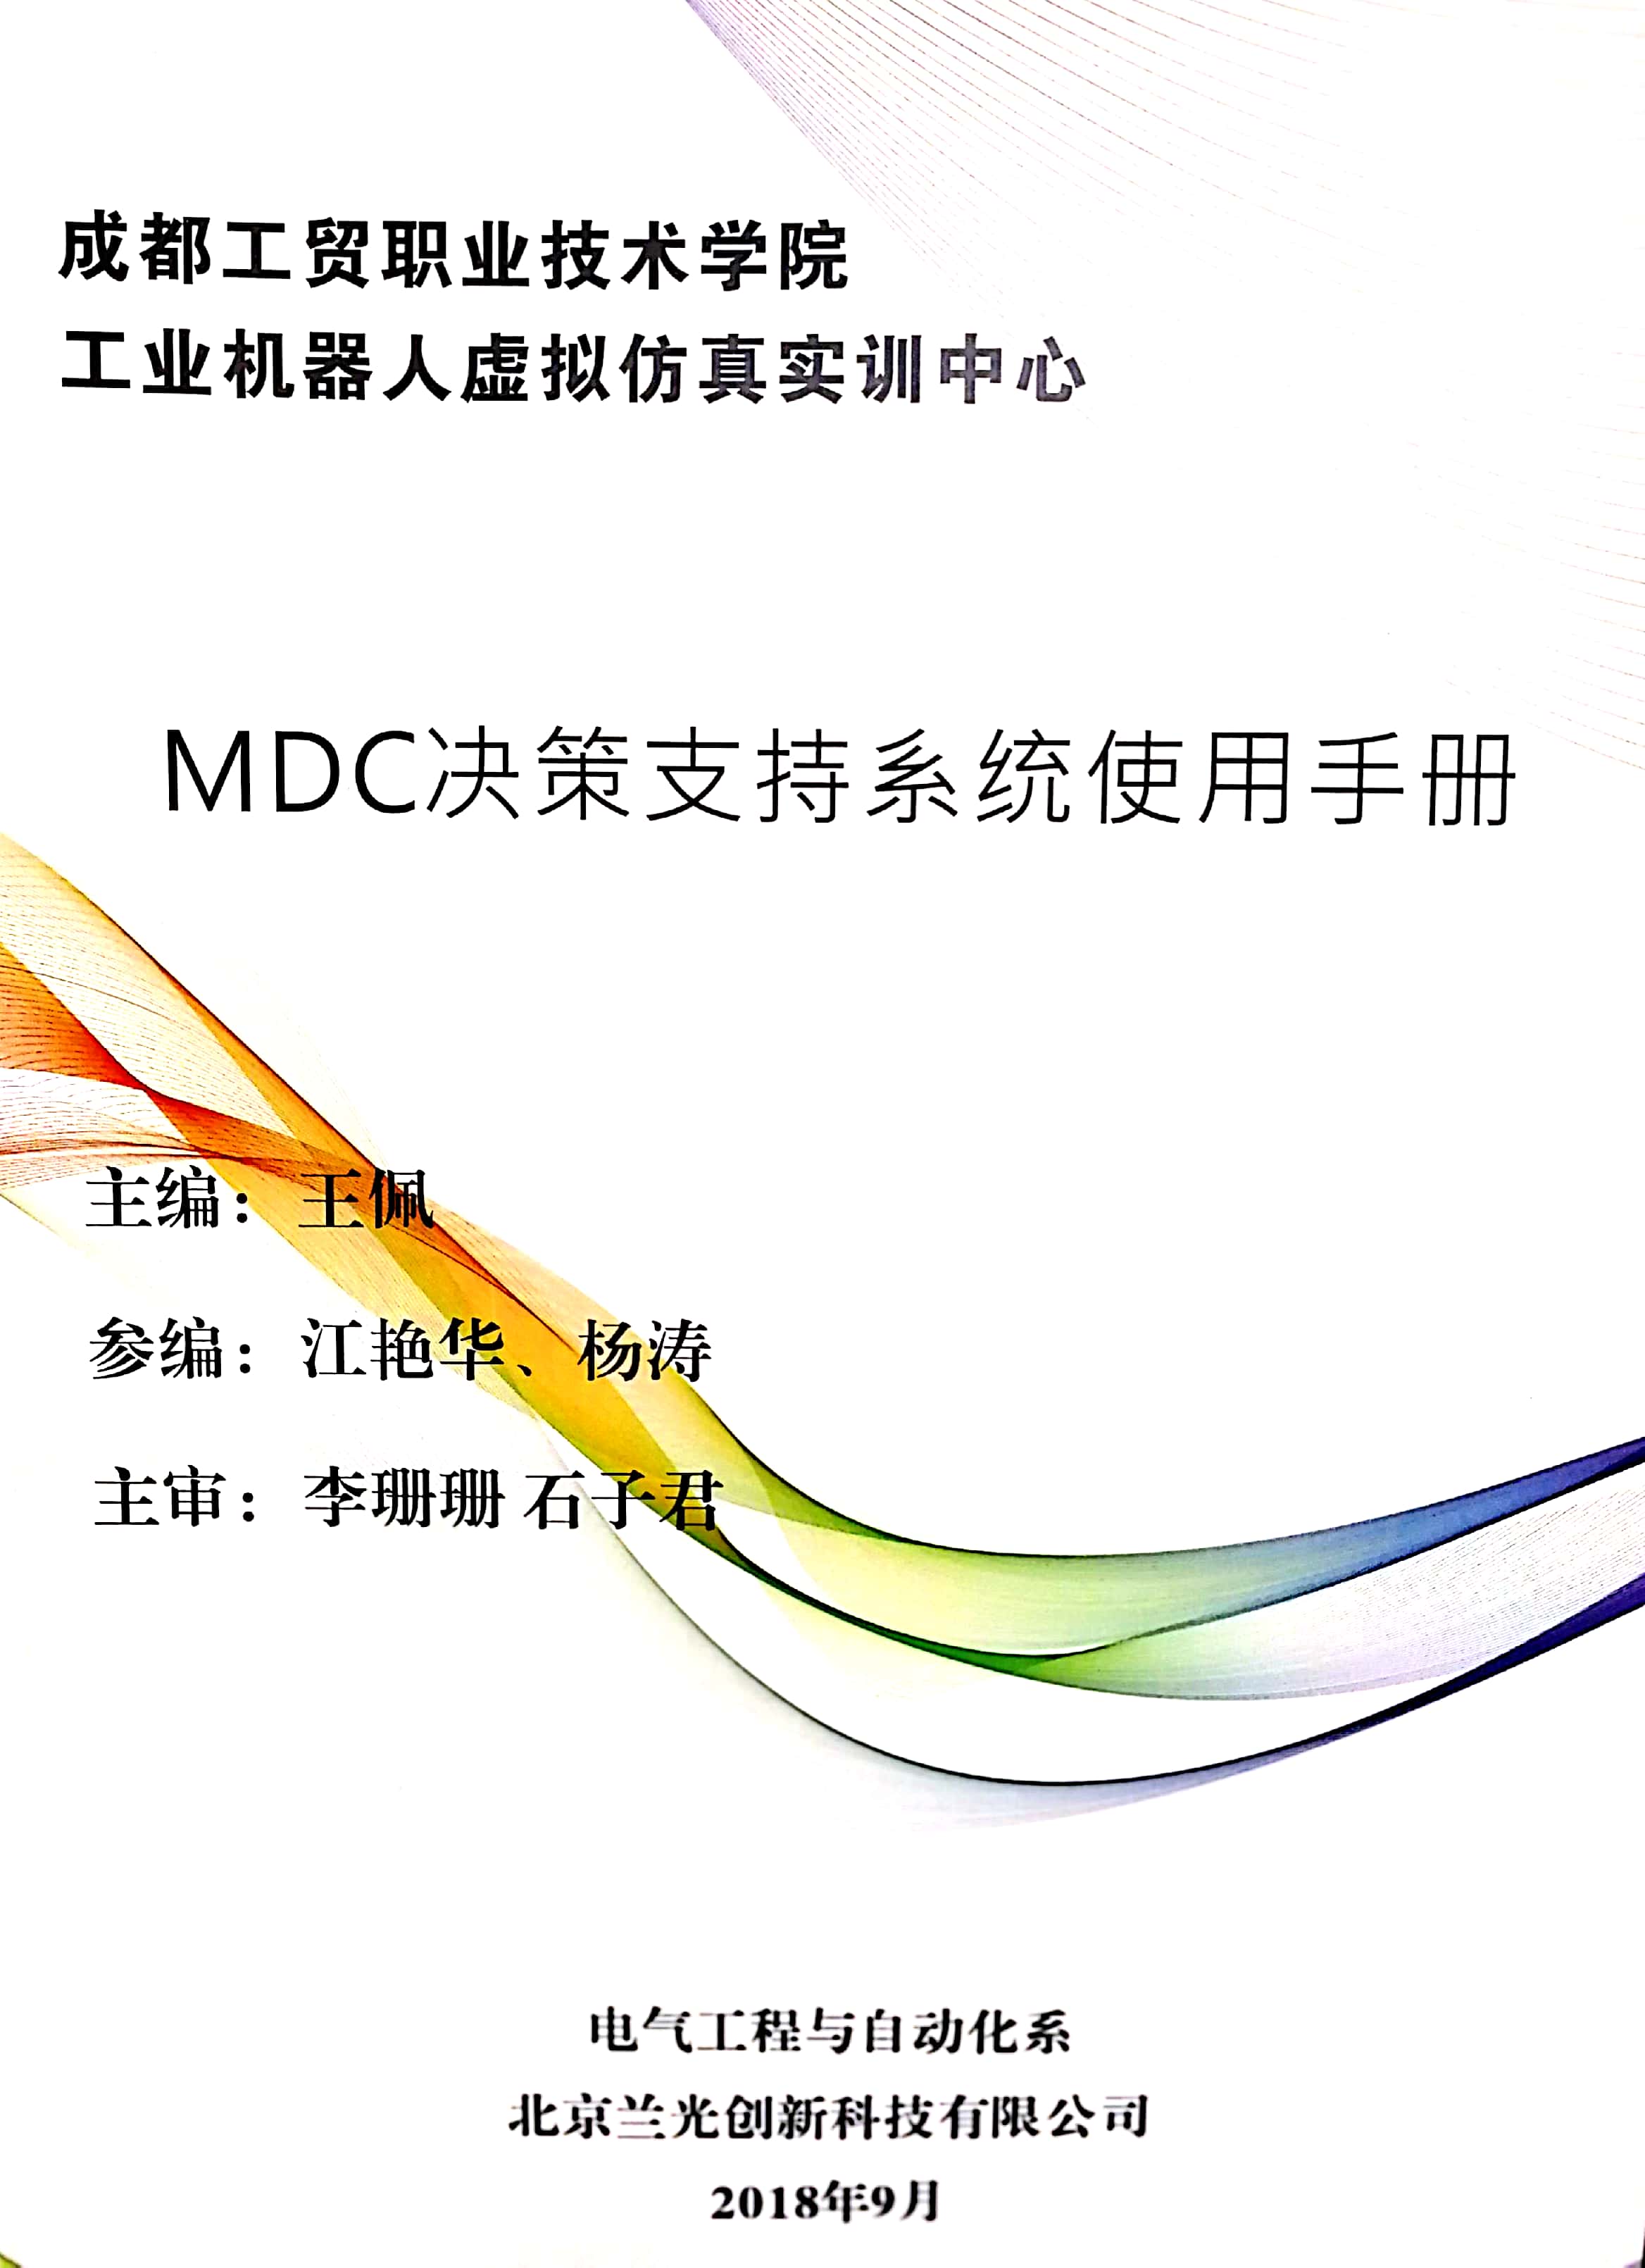 MDC决策支持系统使用手册.jpg